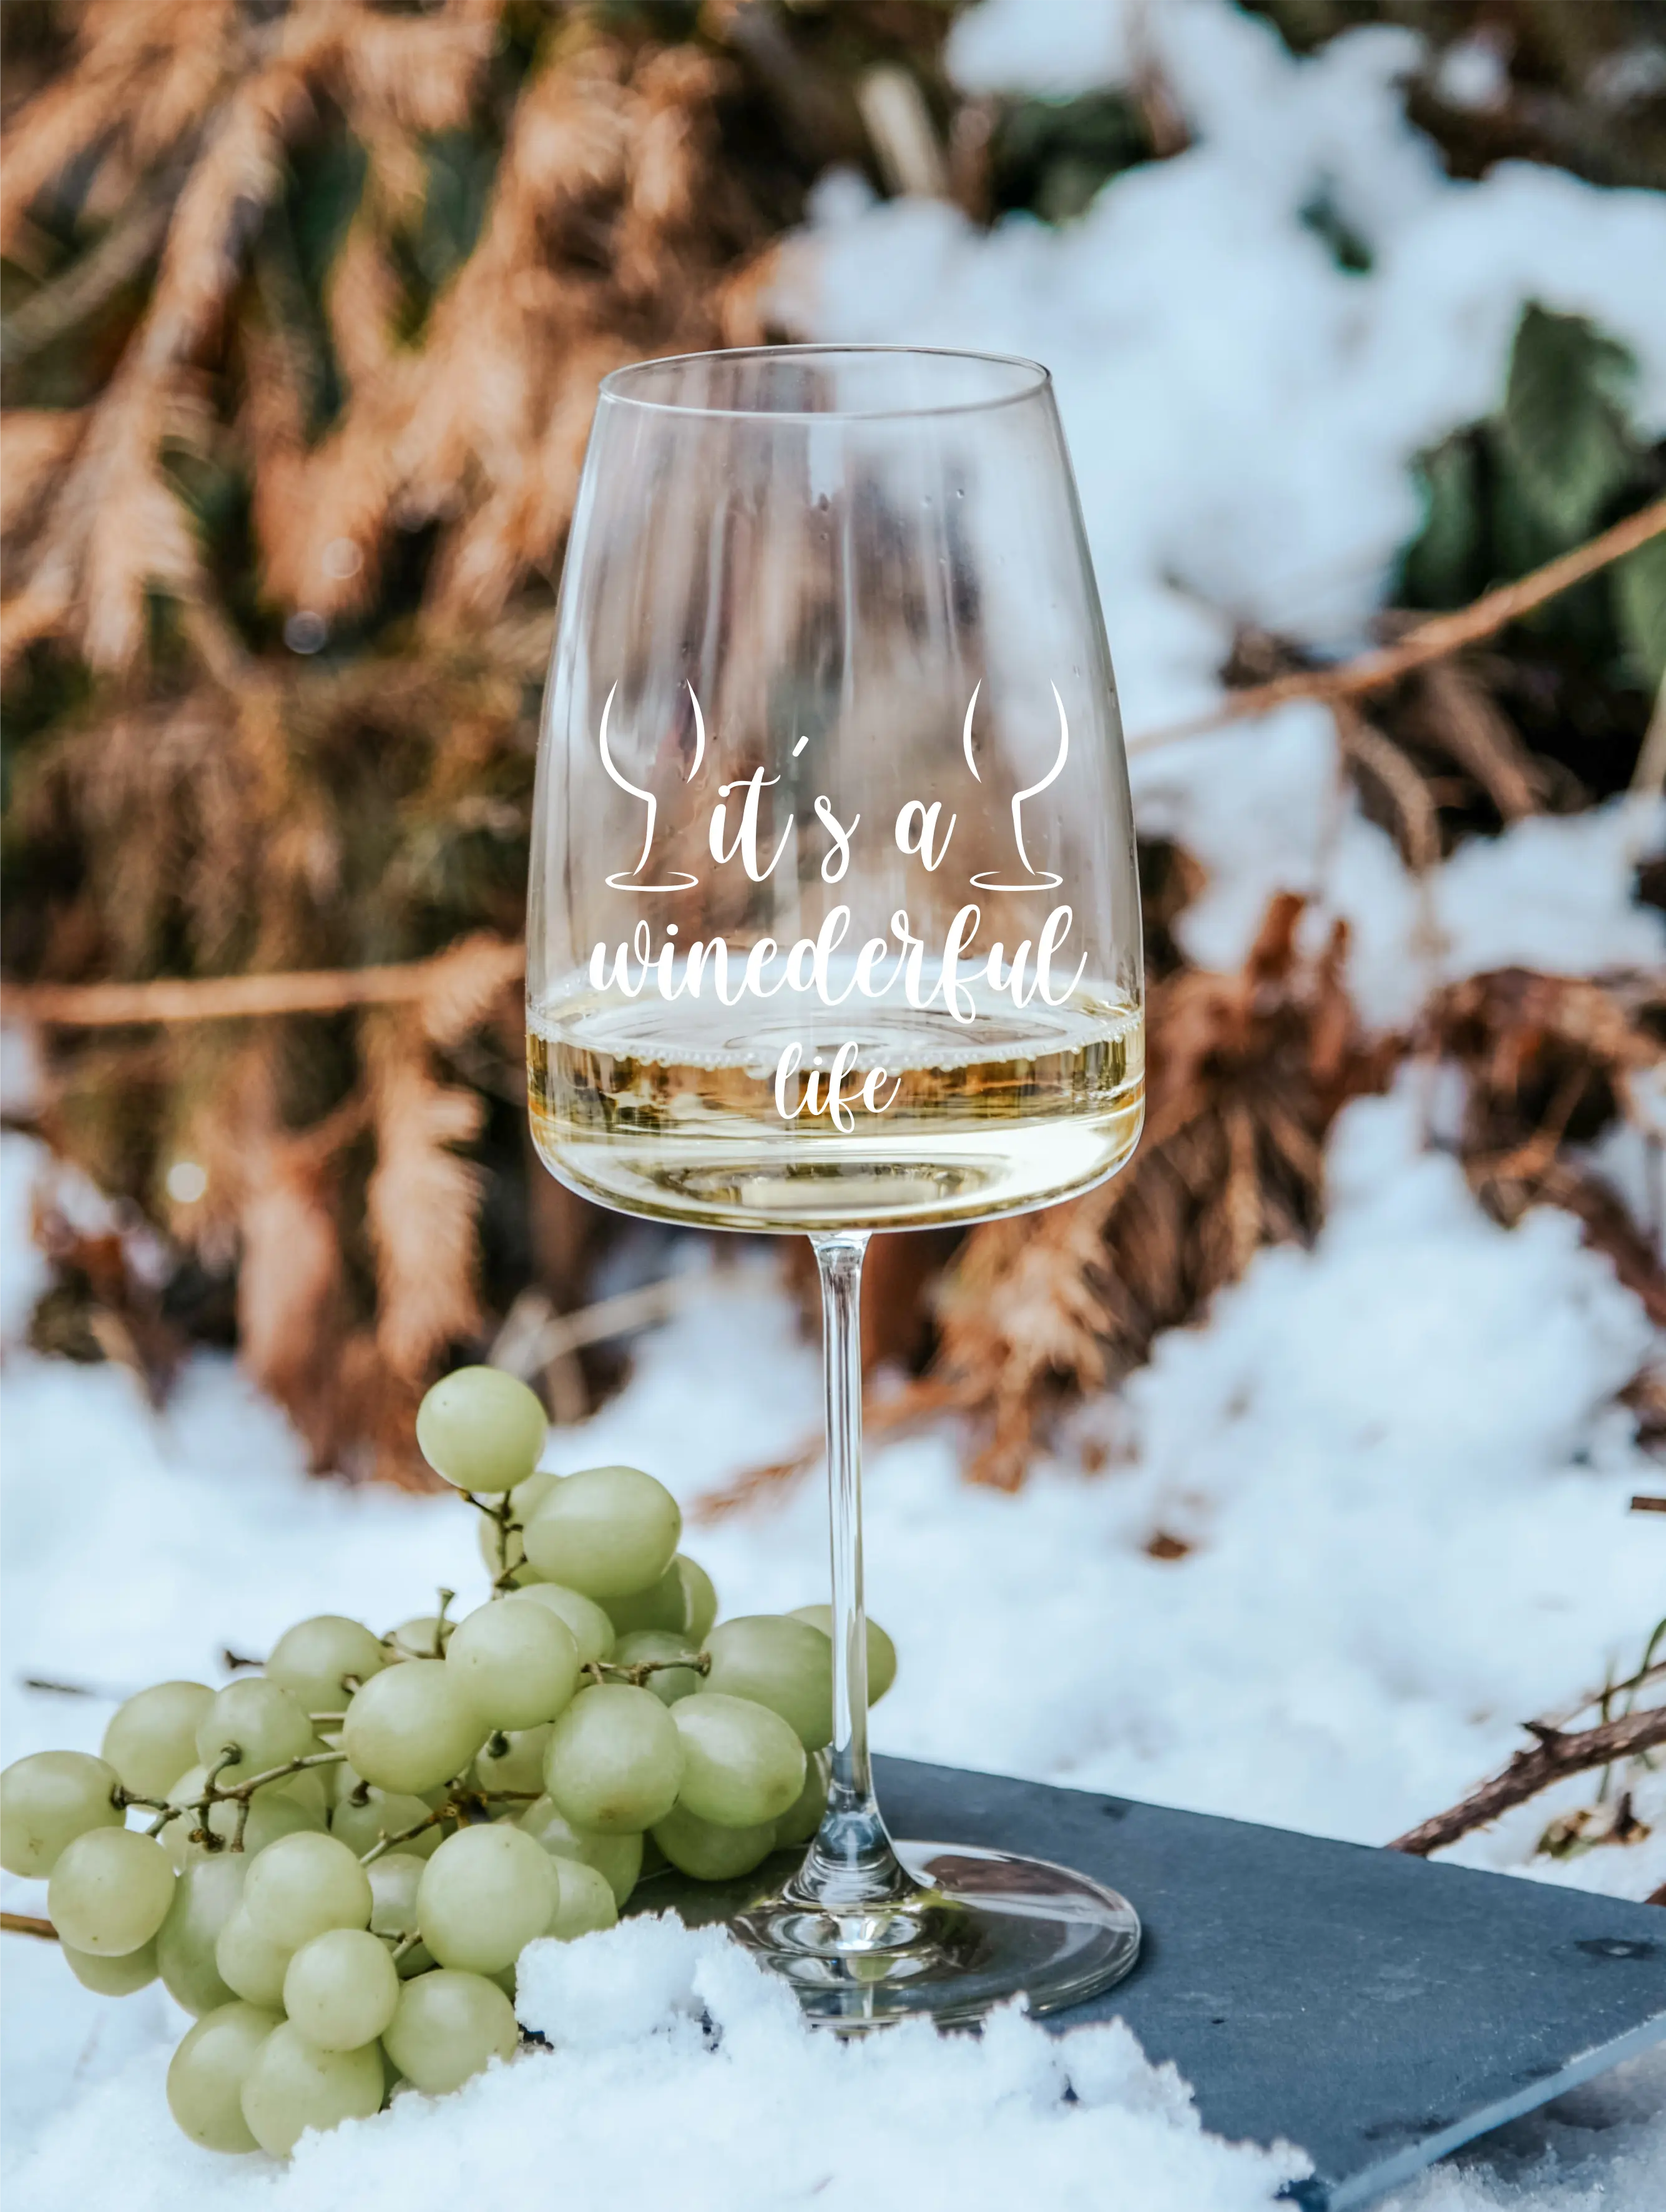 winederful life | graviertes Weinglas   